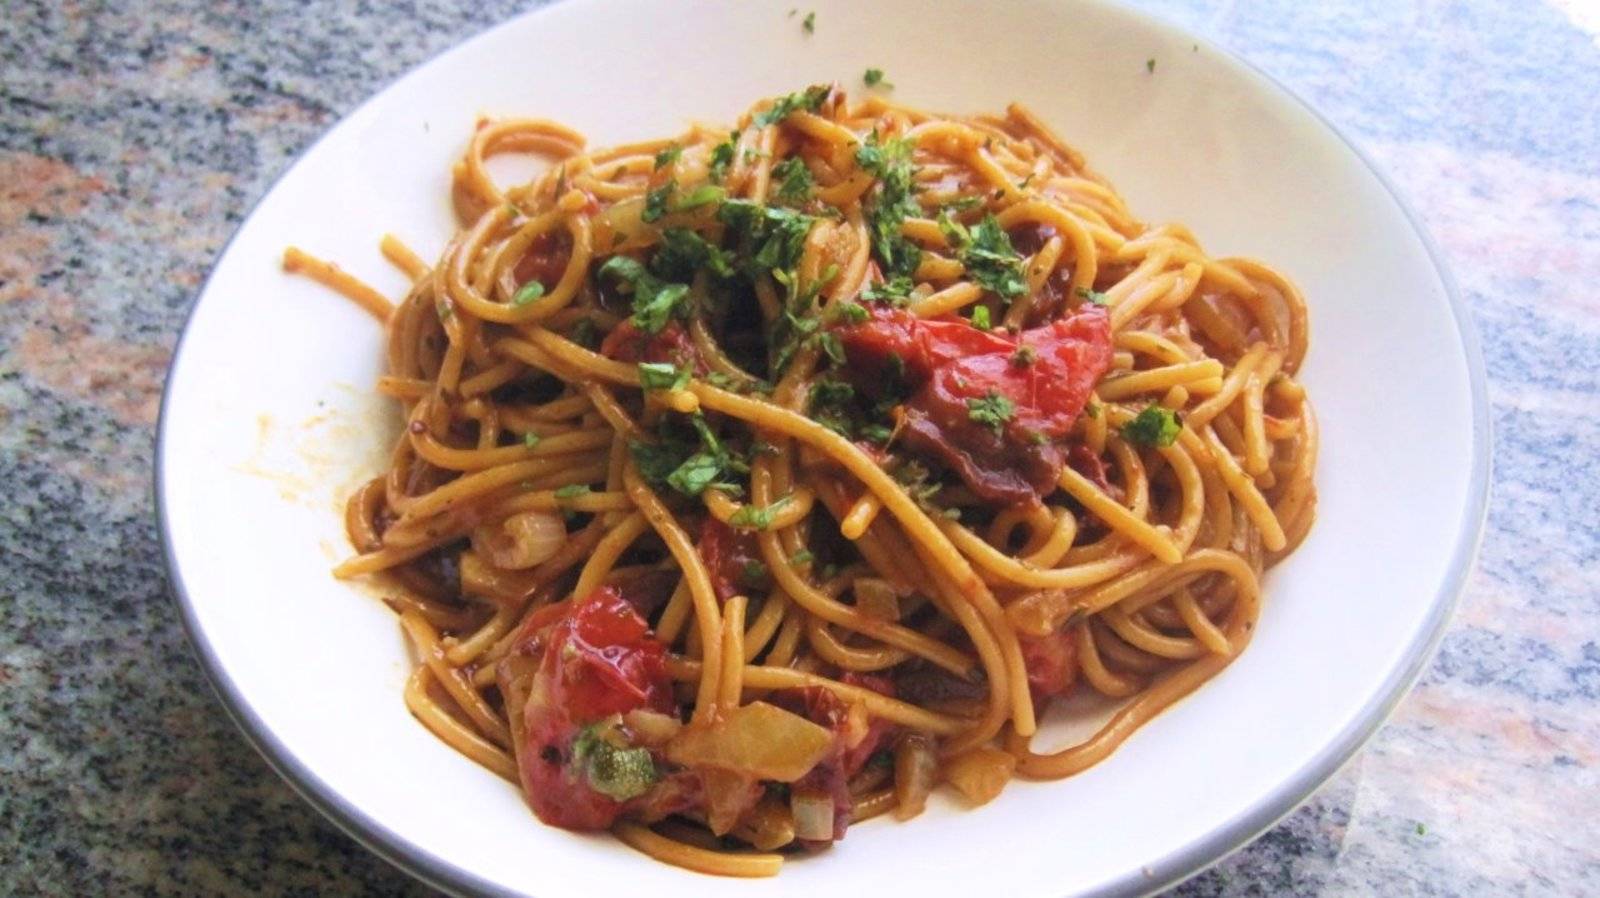 Spaghettieintopf alla puttanesca